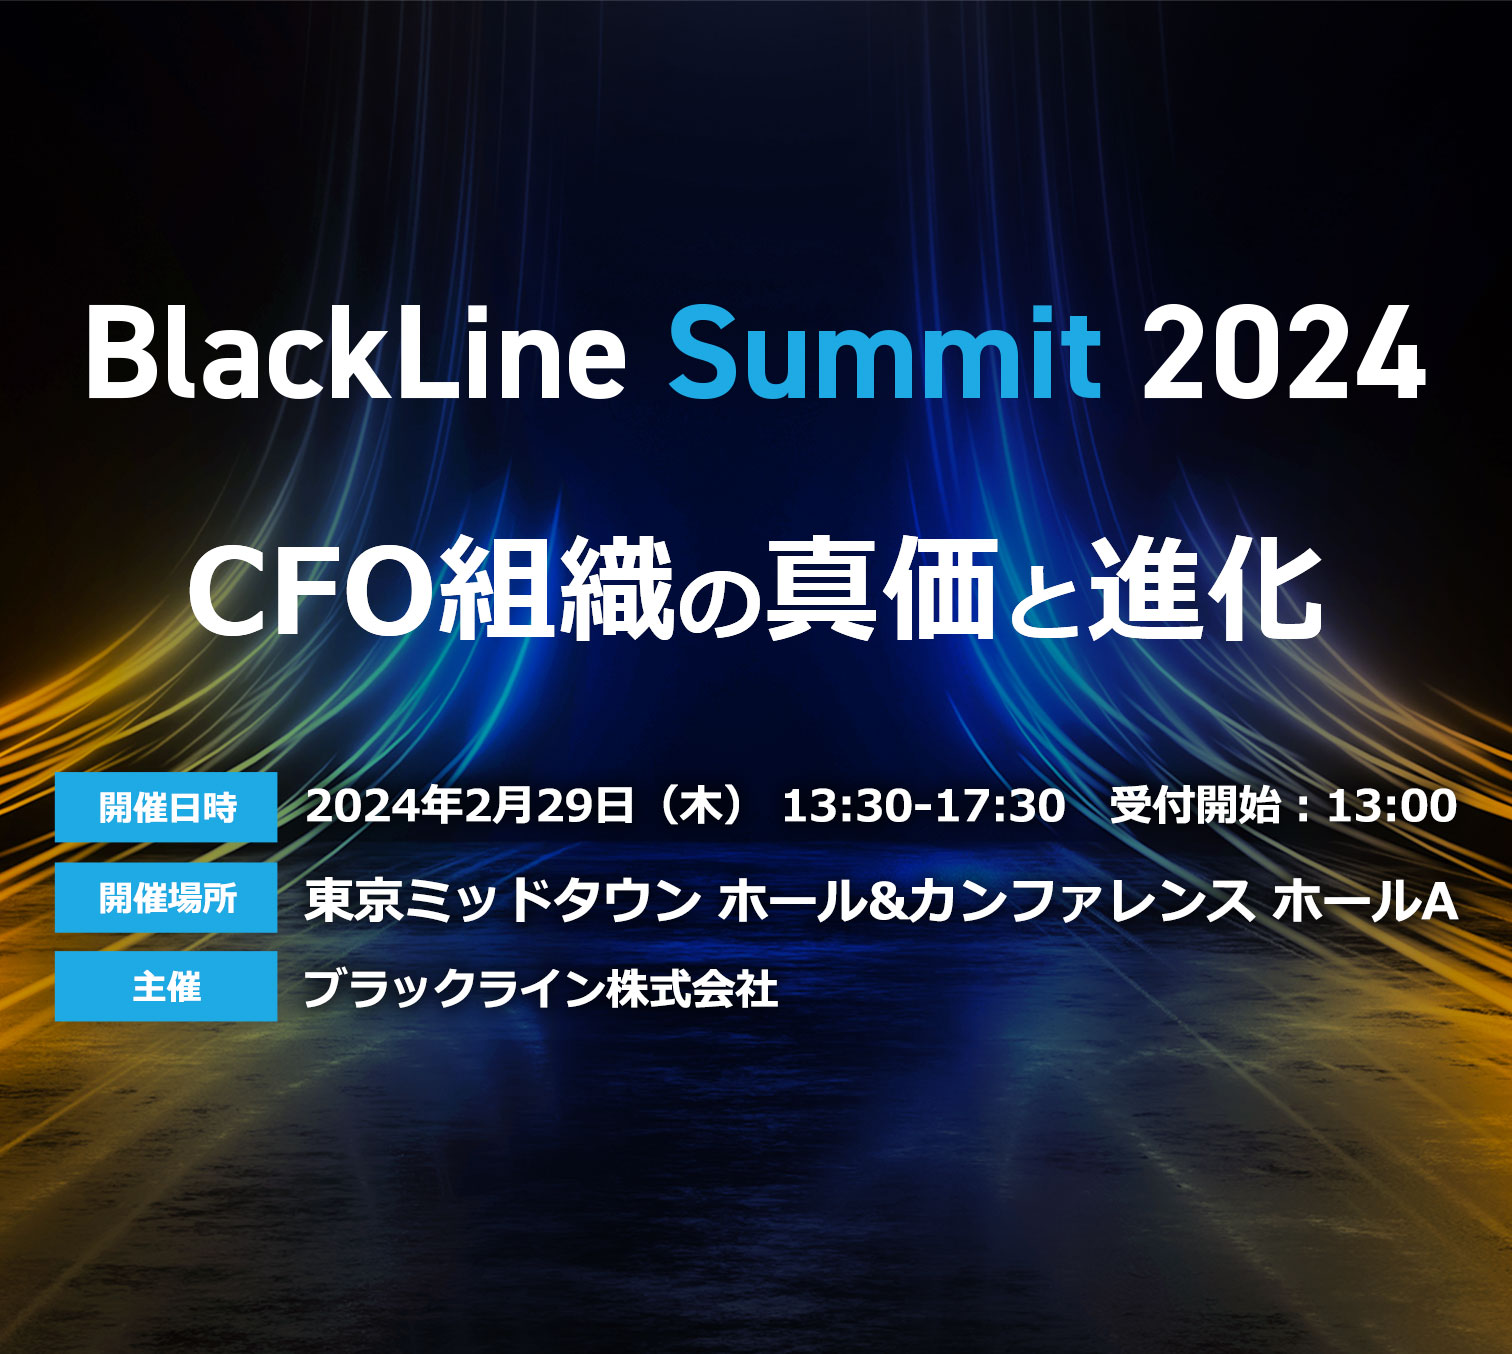 BlackLine Summit 2024